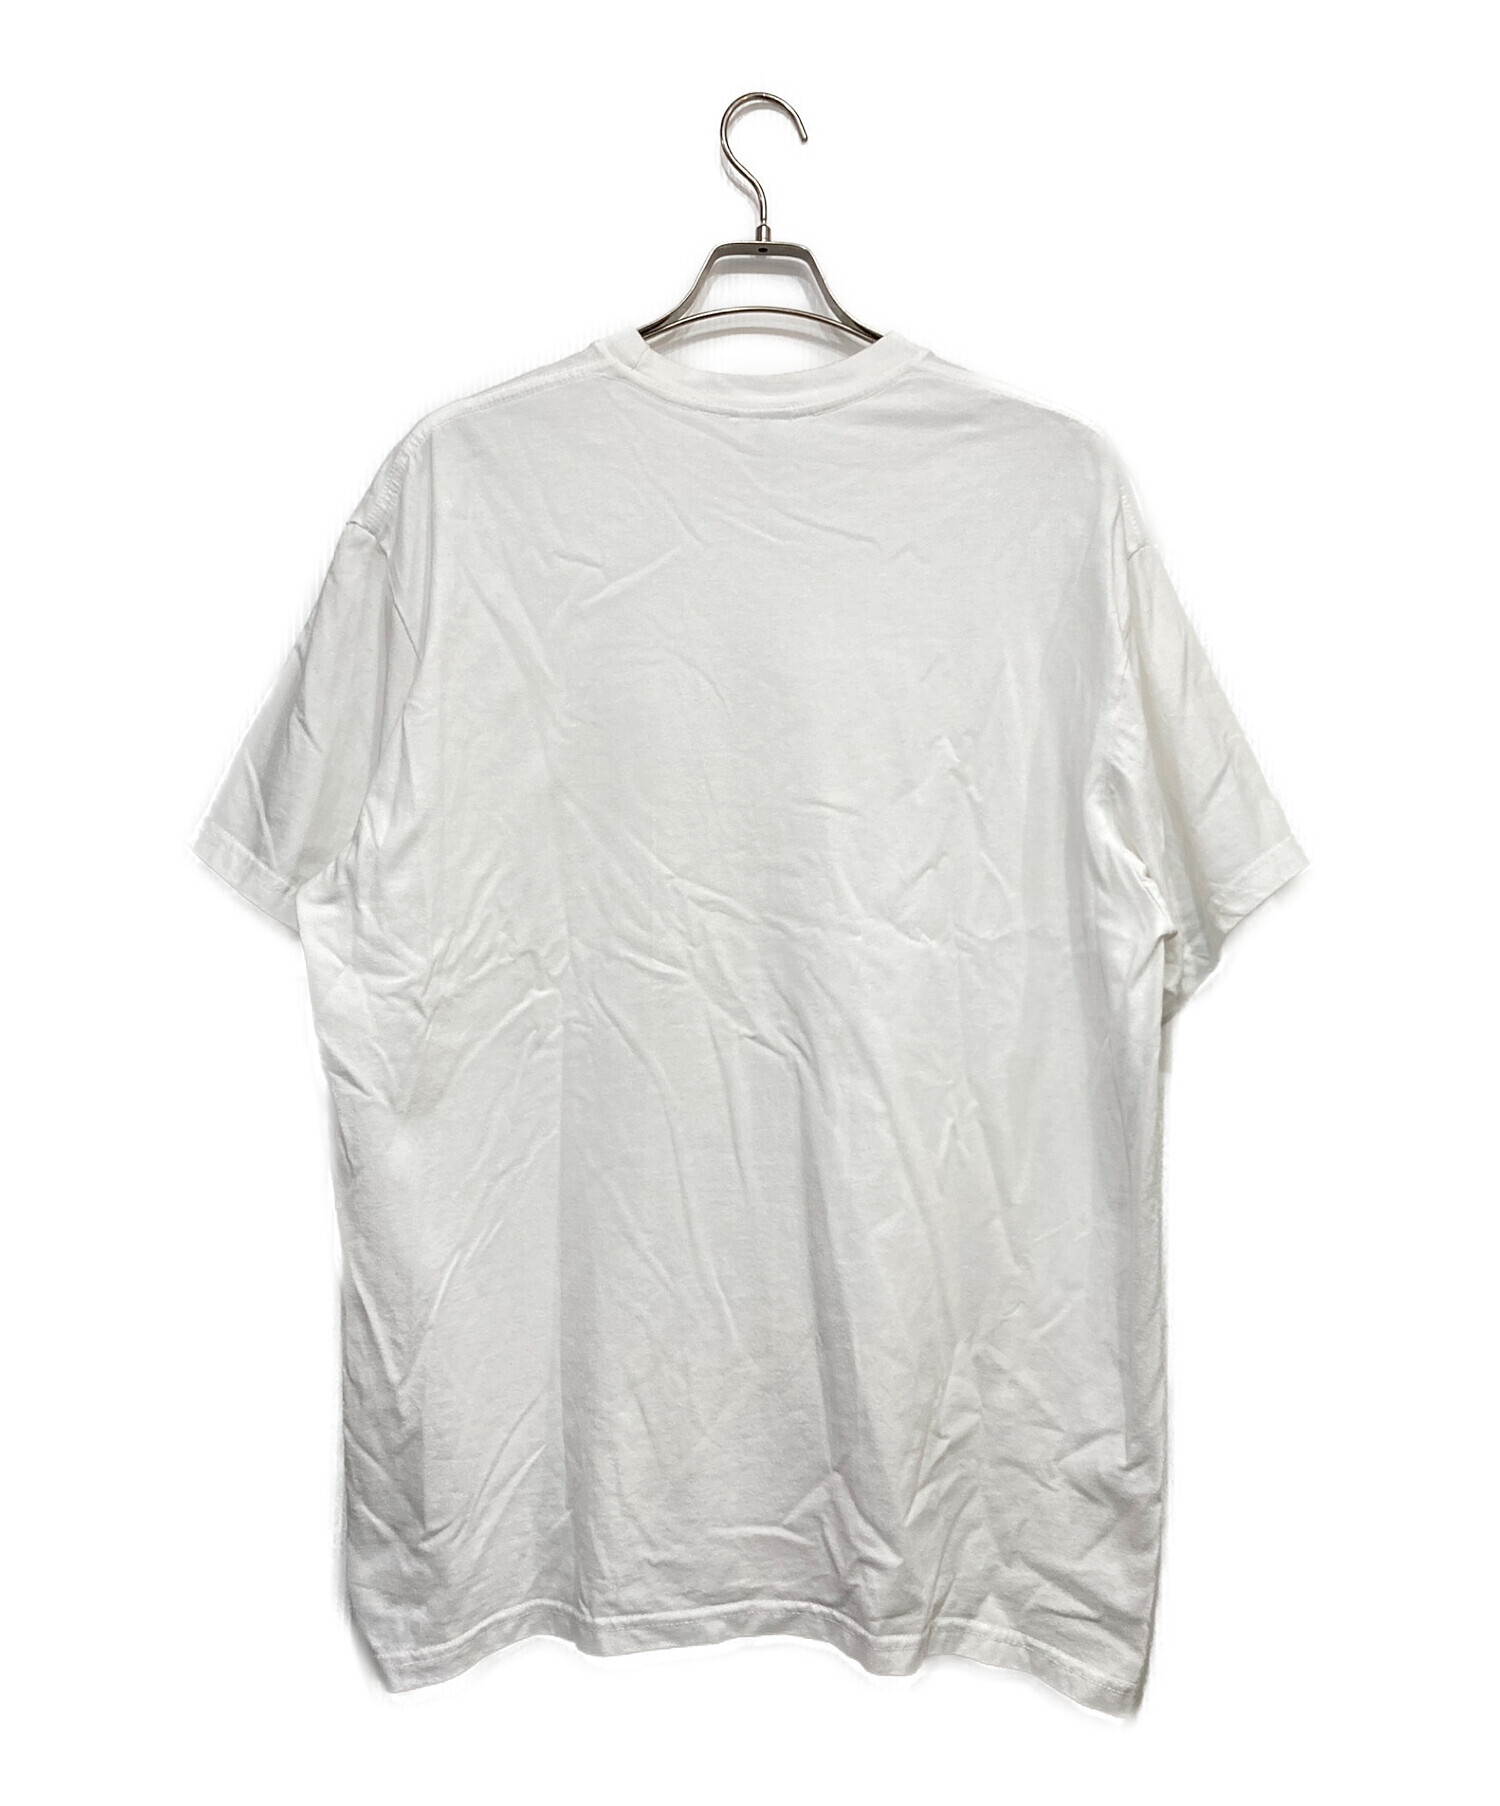 SUPREME (シュプリーム) Shrek Tee シュレック Tシャツ ホワイト×グリーン サイズ:SIZE XL